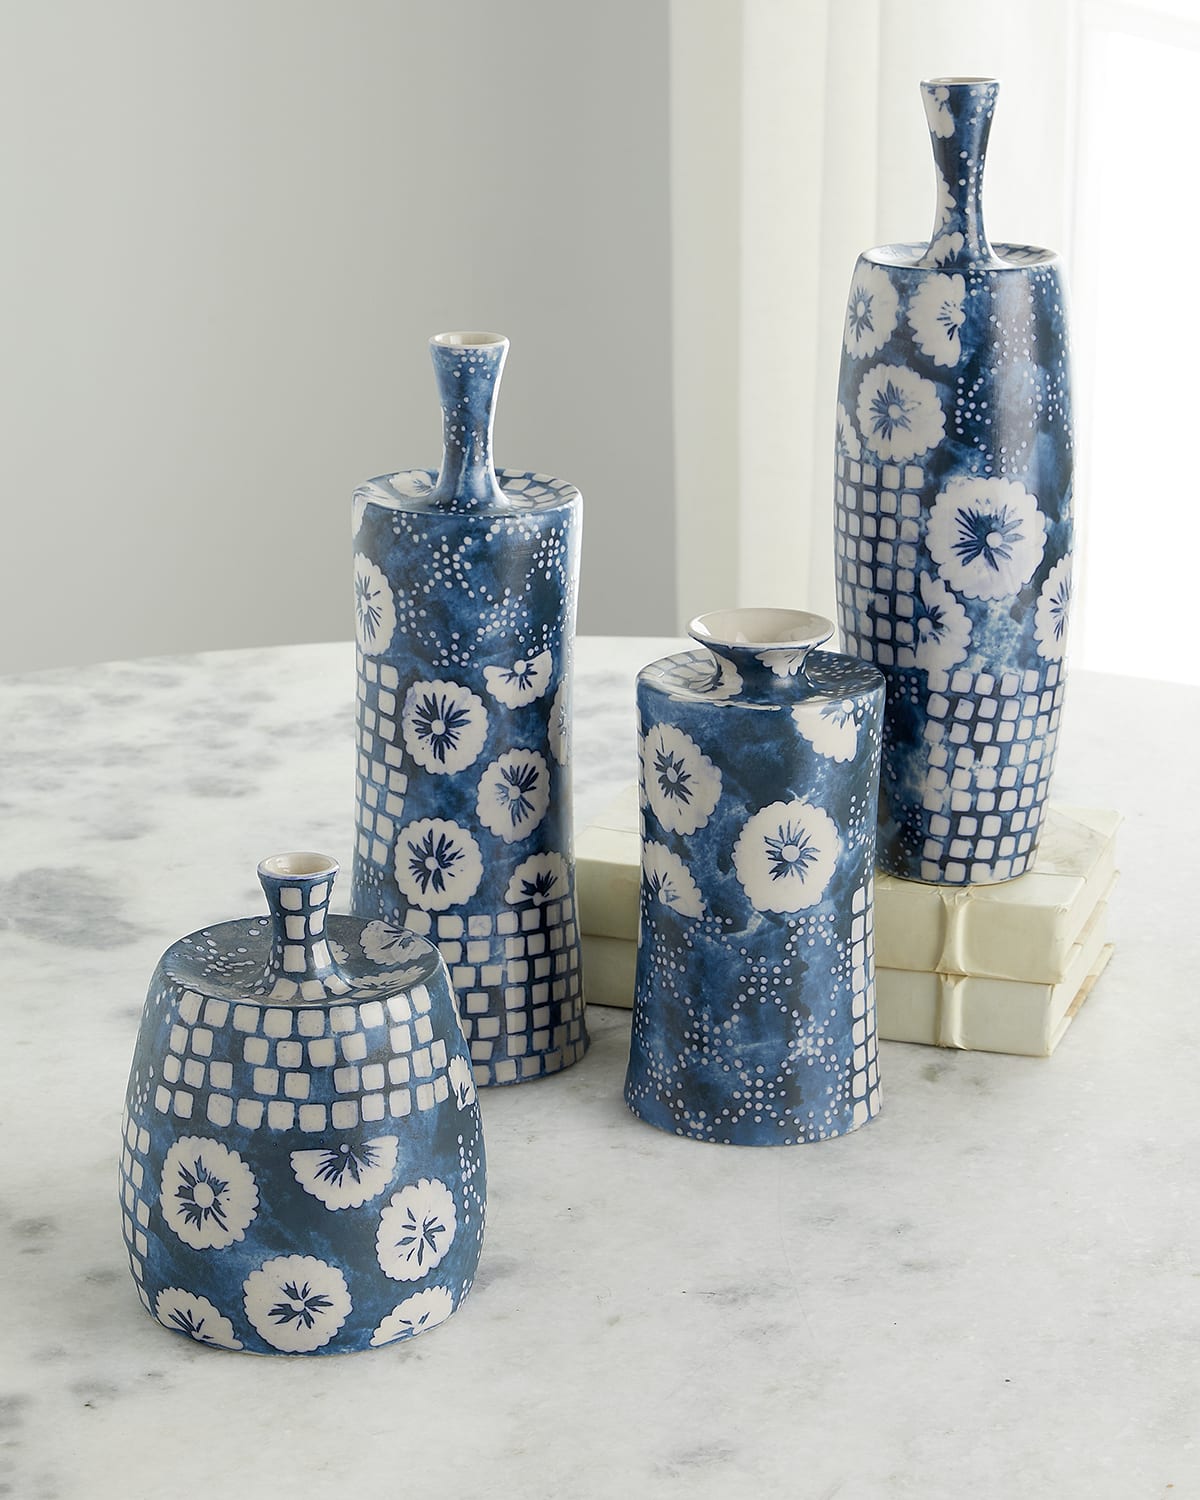 Handmade Vase for Flower Plant Porcelain Pottery Stoneware Home  Decor 8.8 G-Champa L